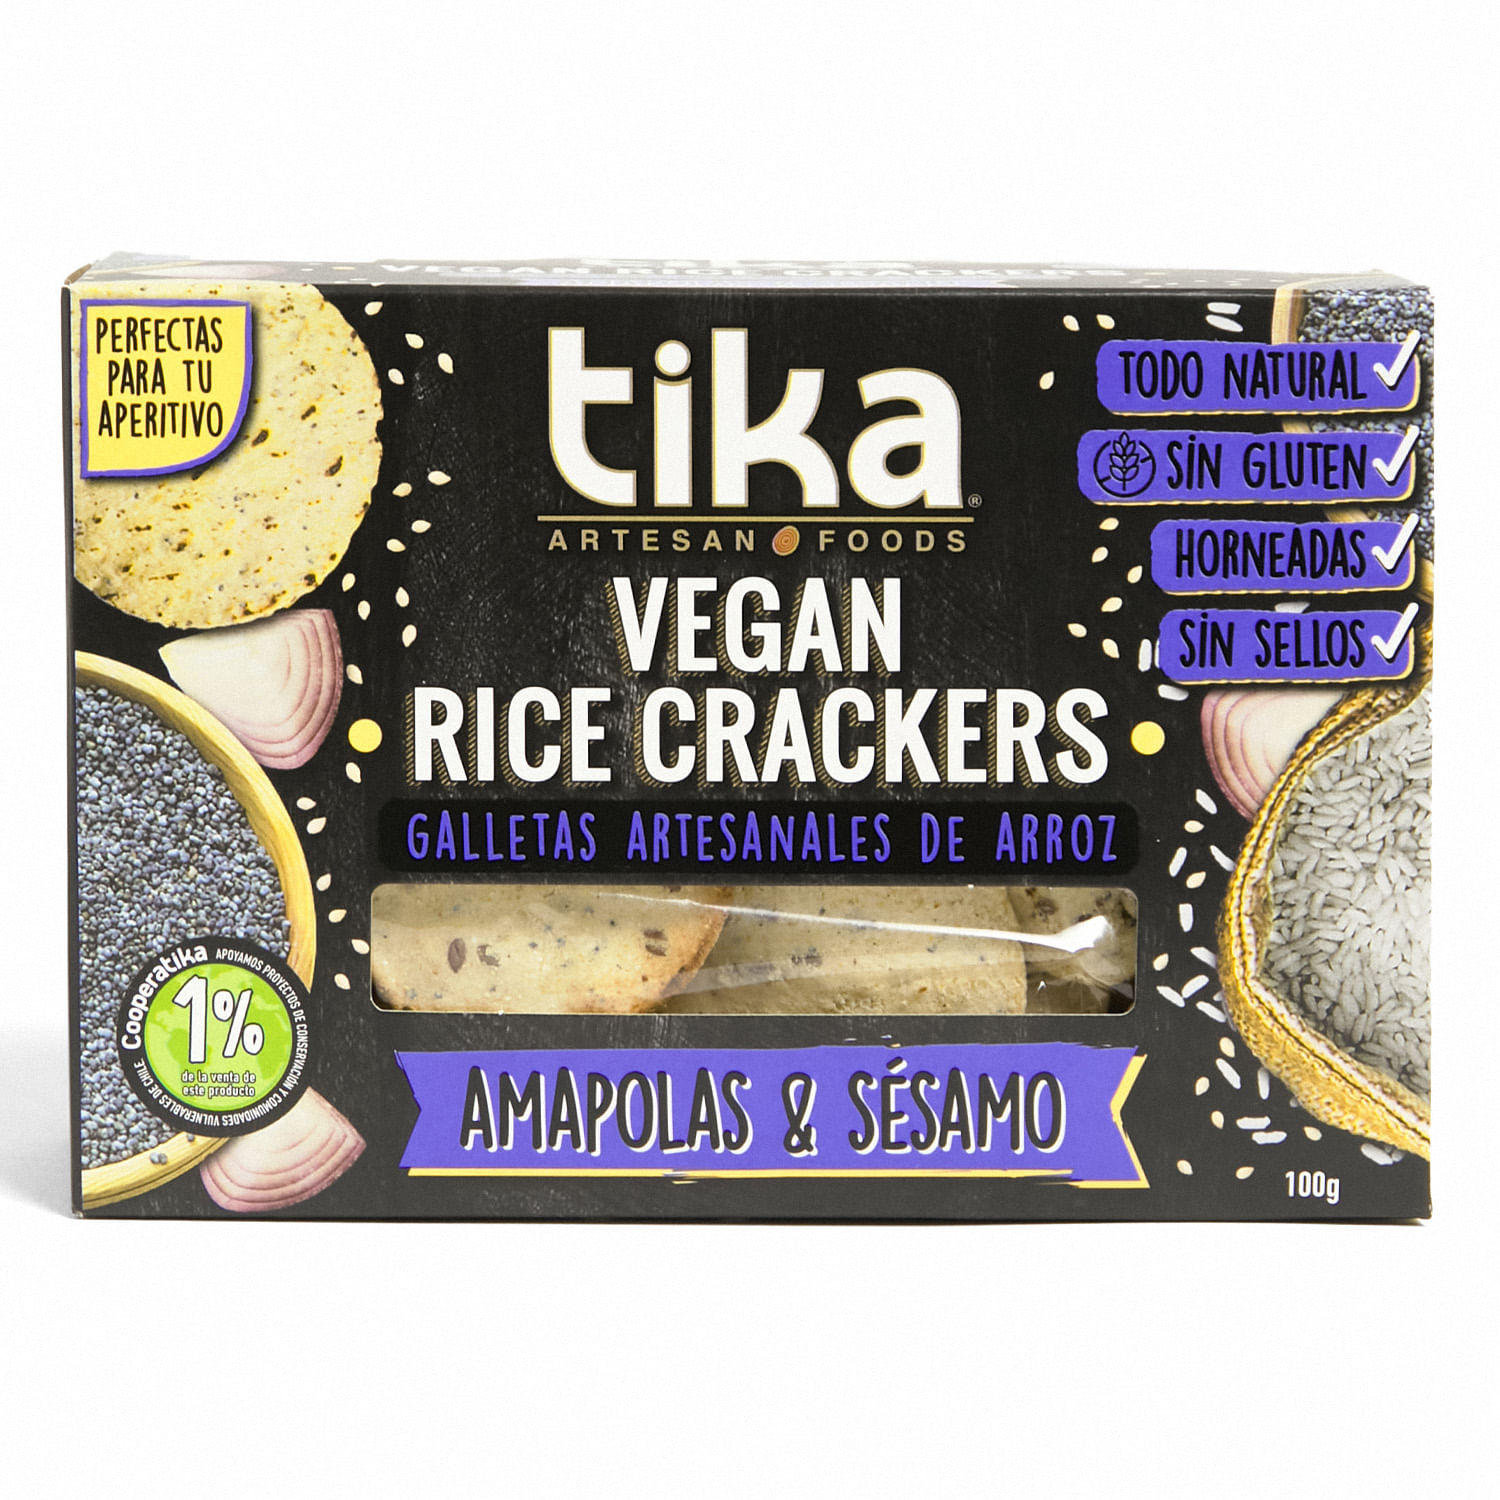 Crackers Veganas Artesanales de Trufa Negra y Aceite de Oliva. –